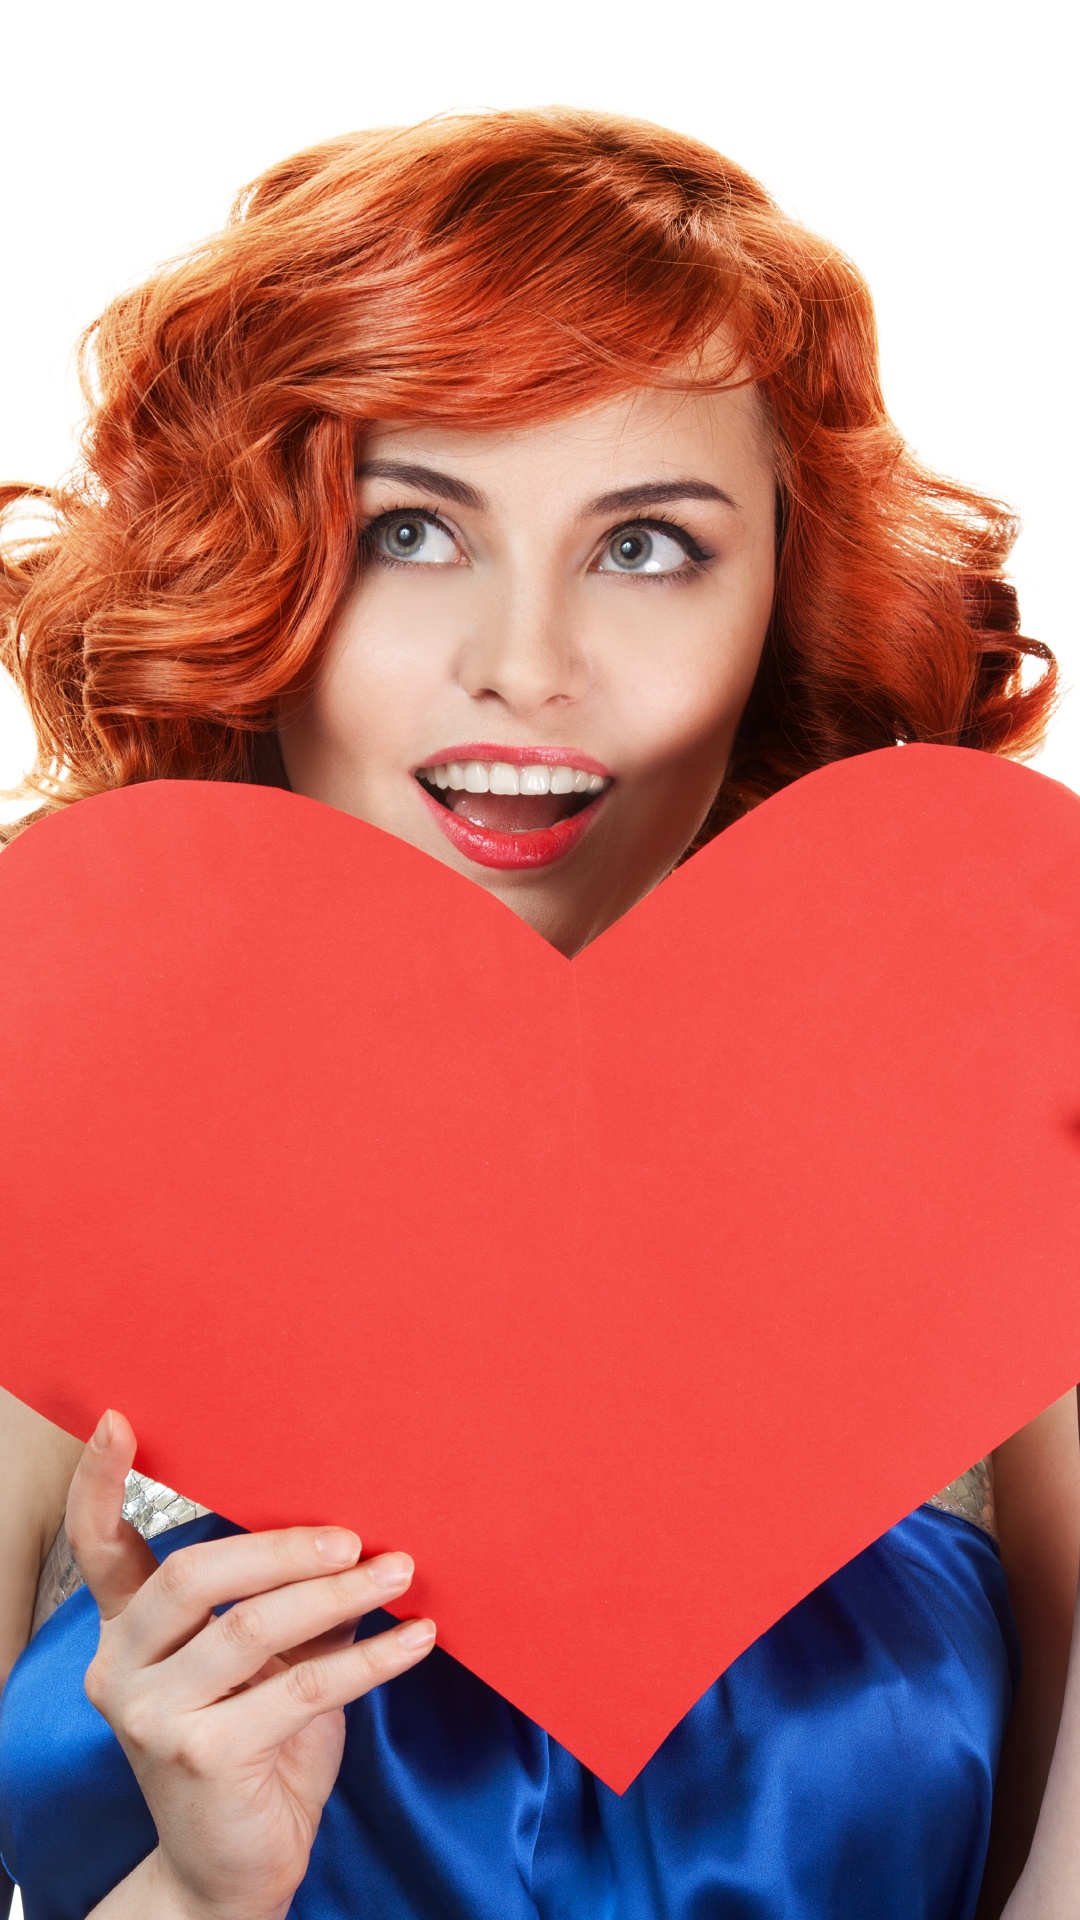 心脏, 红色的, 棕色的头发, 红色的头发, 礼物 壁纸 1080x1920 允许